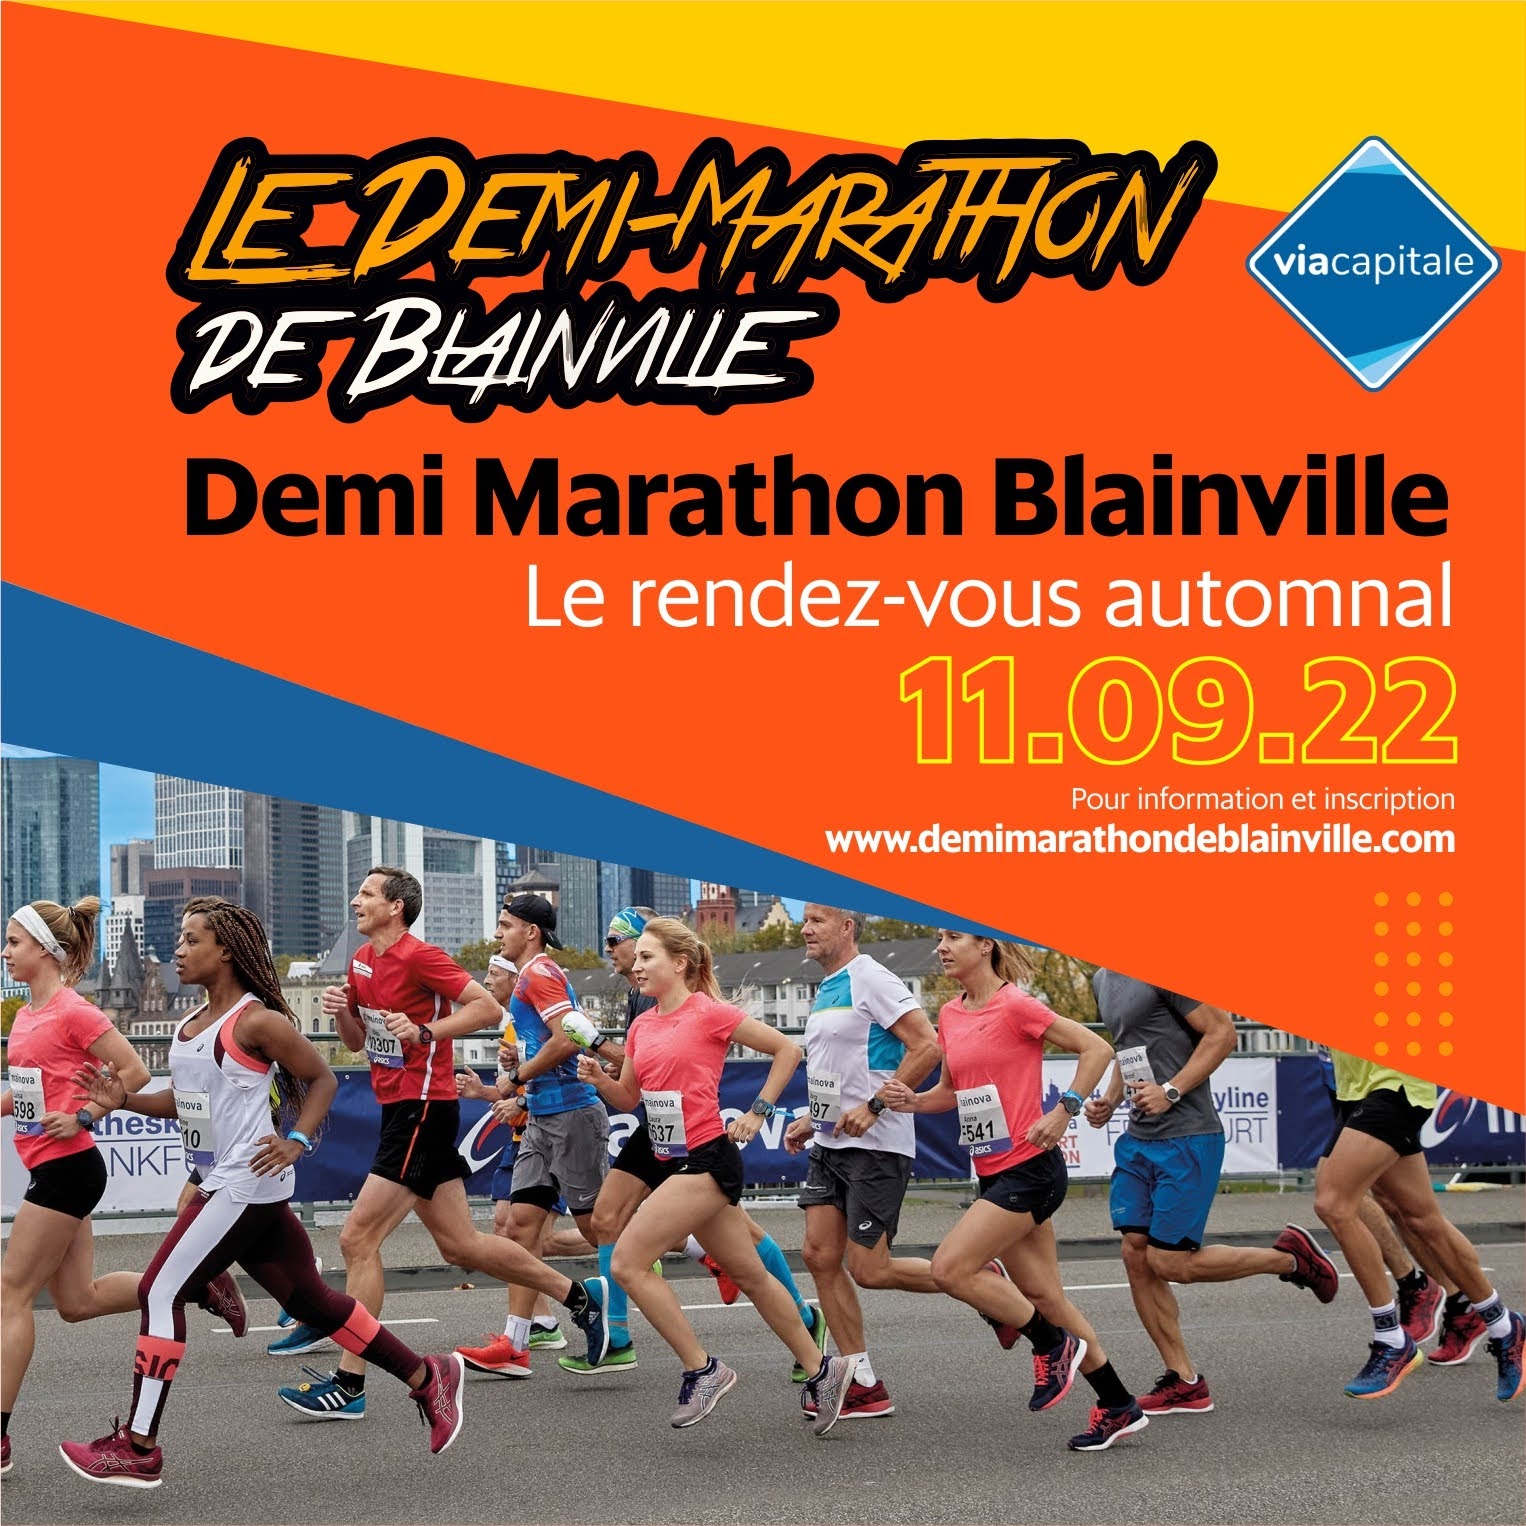 Demi-marathon de Blainville